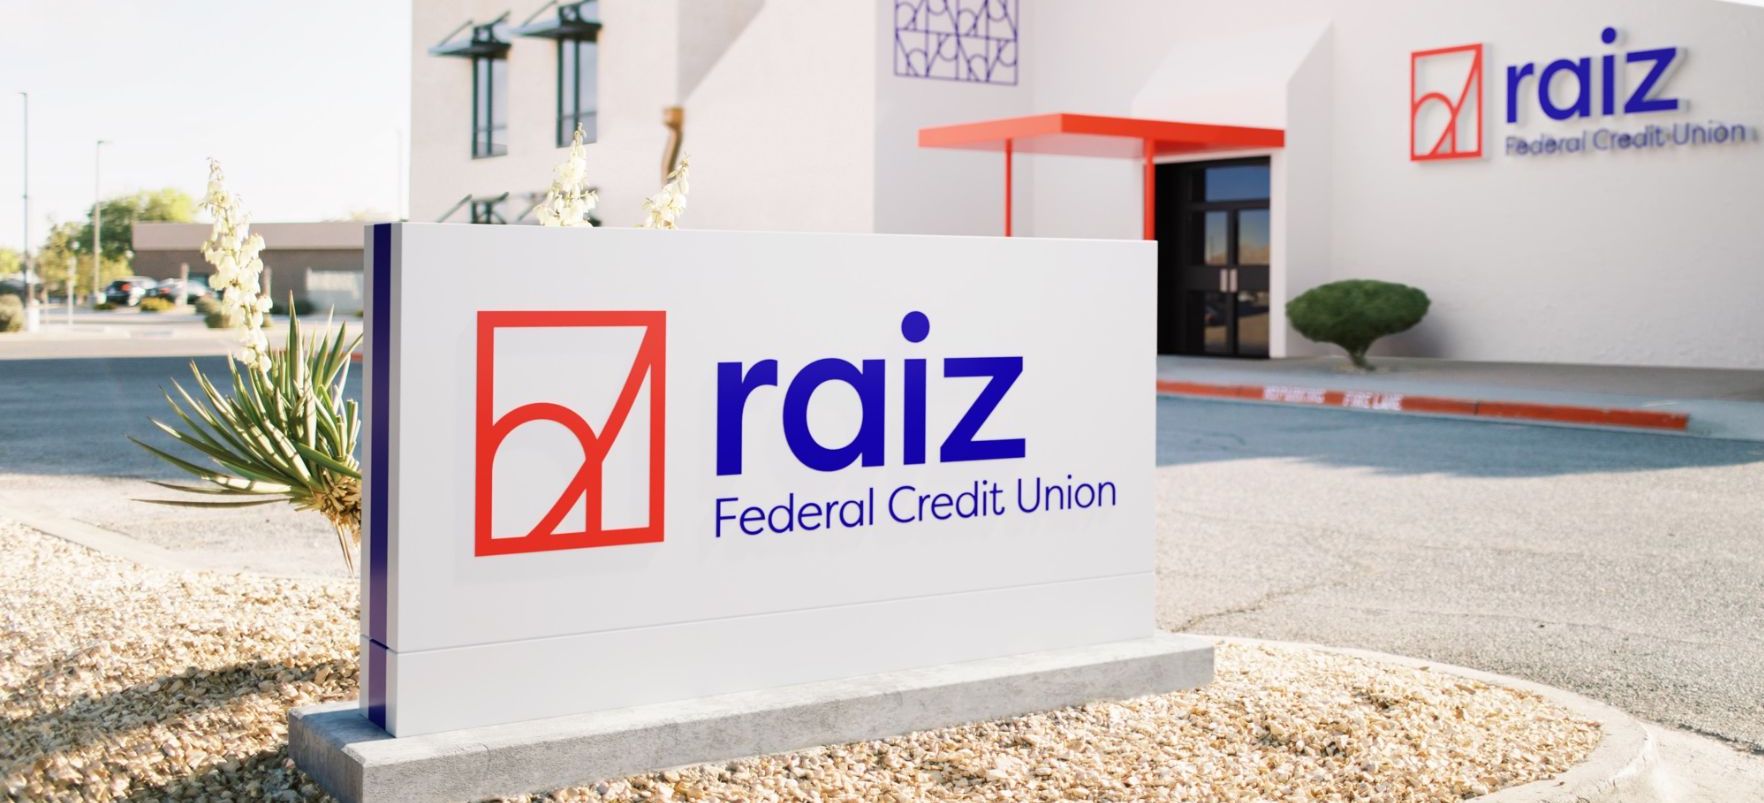 Raiz Federal Credit Union